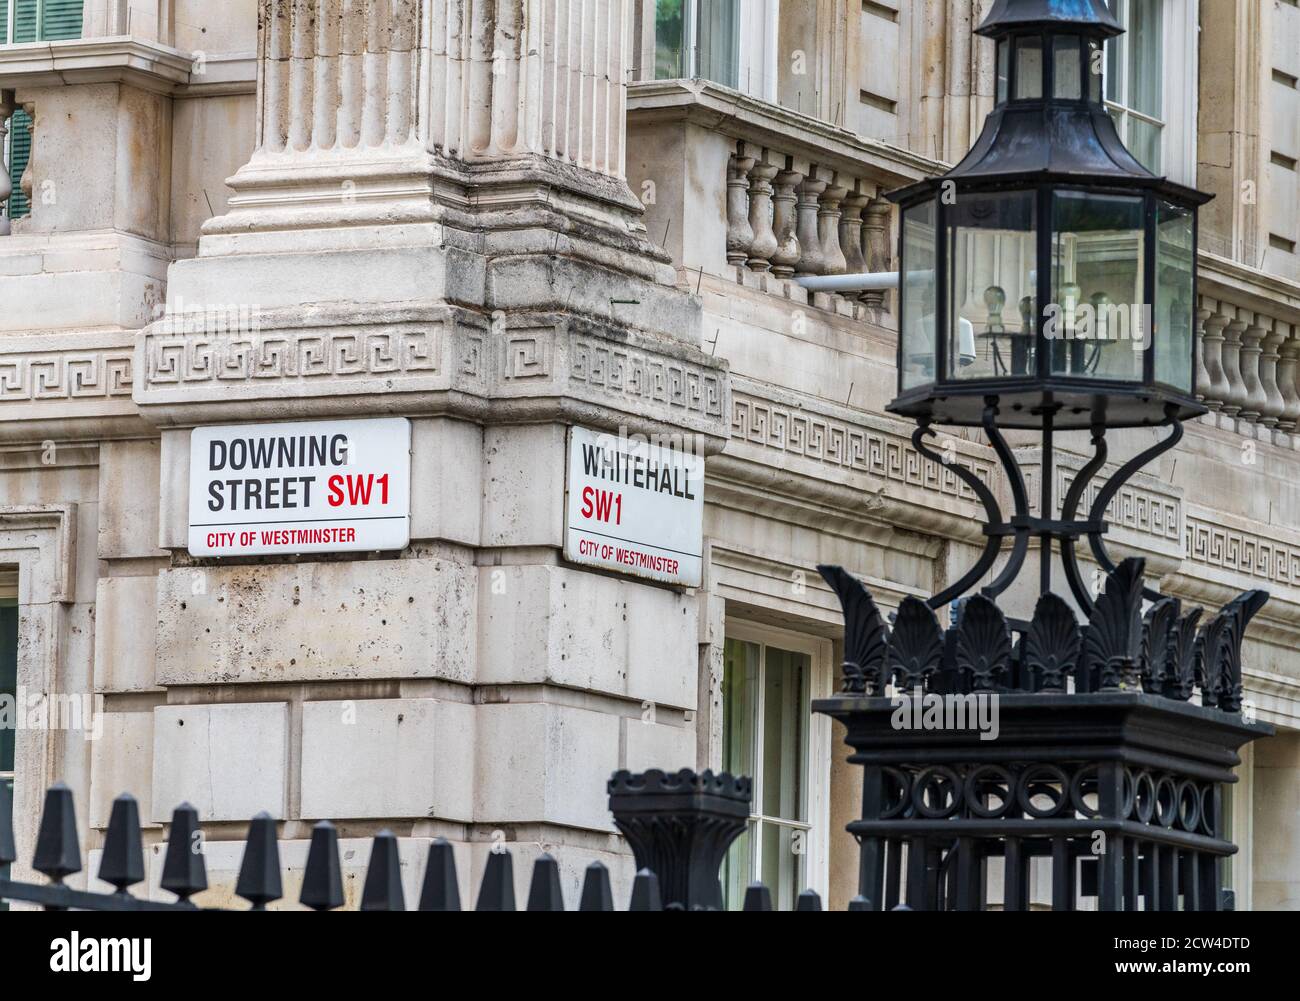 Downing Street & Whitehall Street London SW1 Signes - Whitehall est au cœur de la ville de gouvernement de Westminster, dans le centre de Londres Banque D'Images